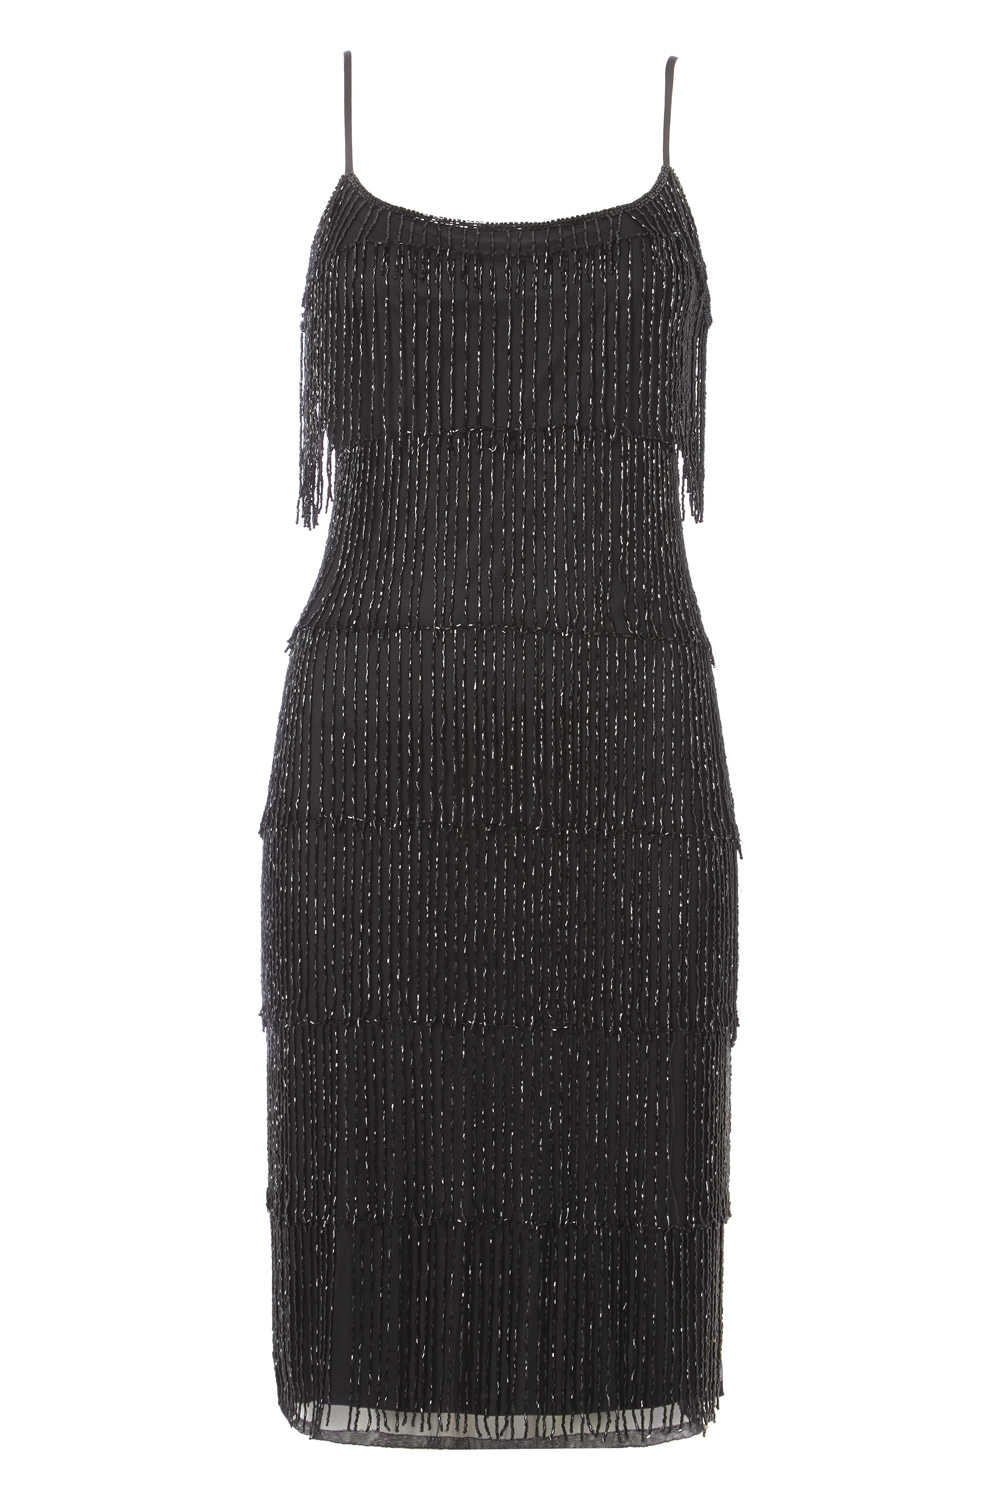 Black Dusk Fringe Beaded Flapper Dress, Image 3 of 5